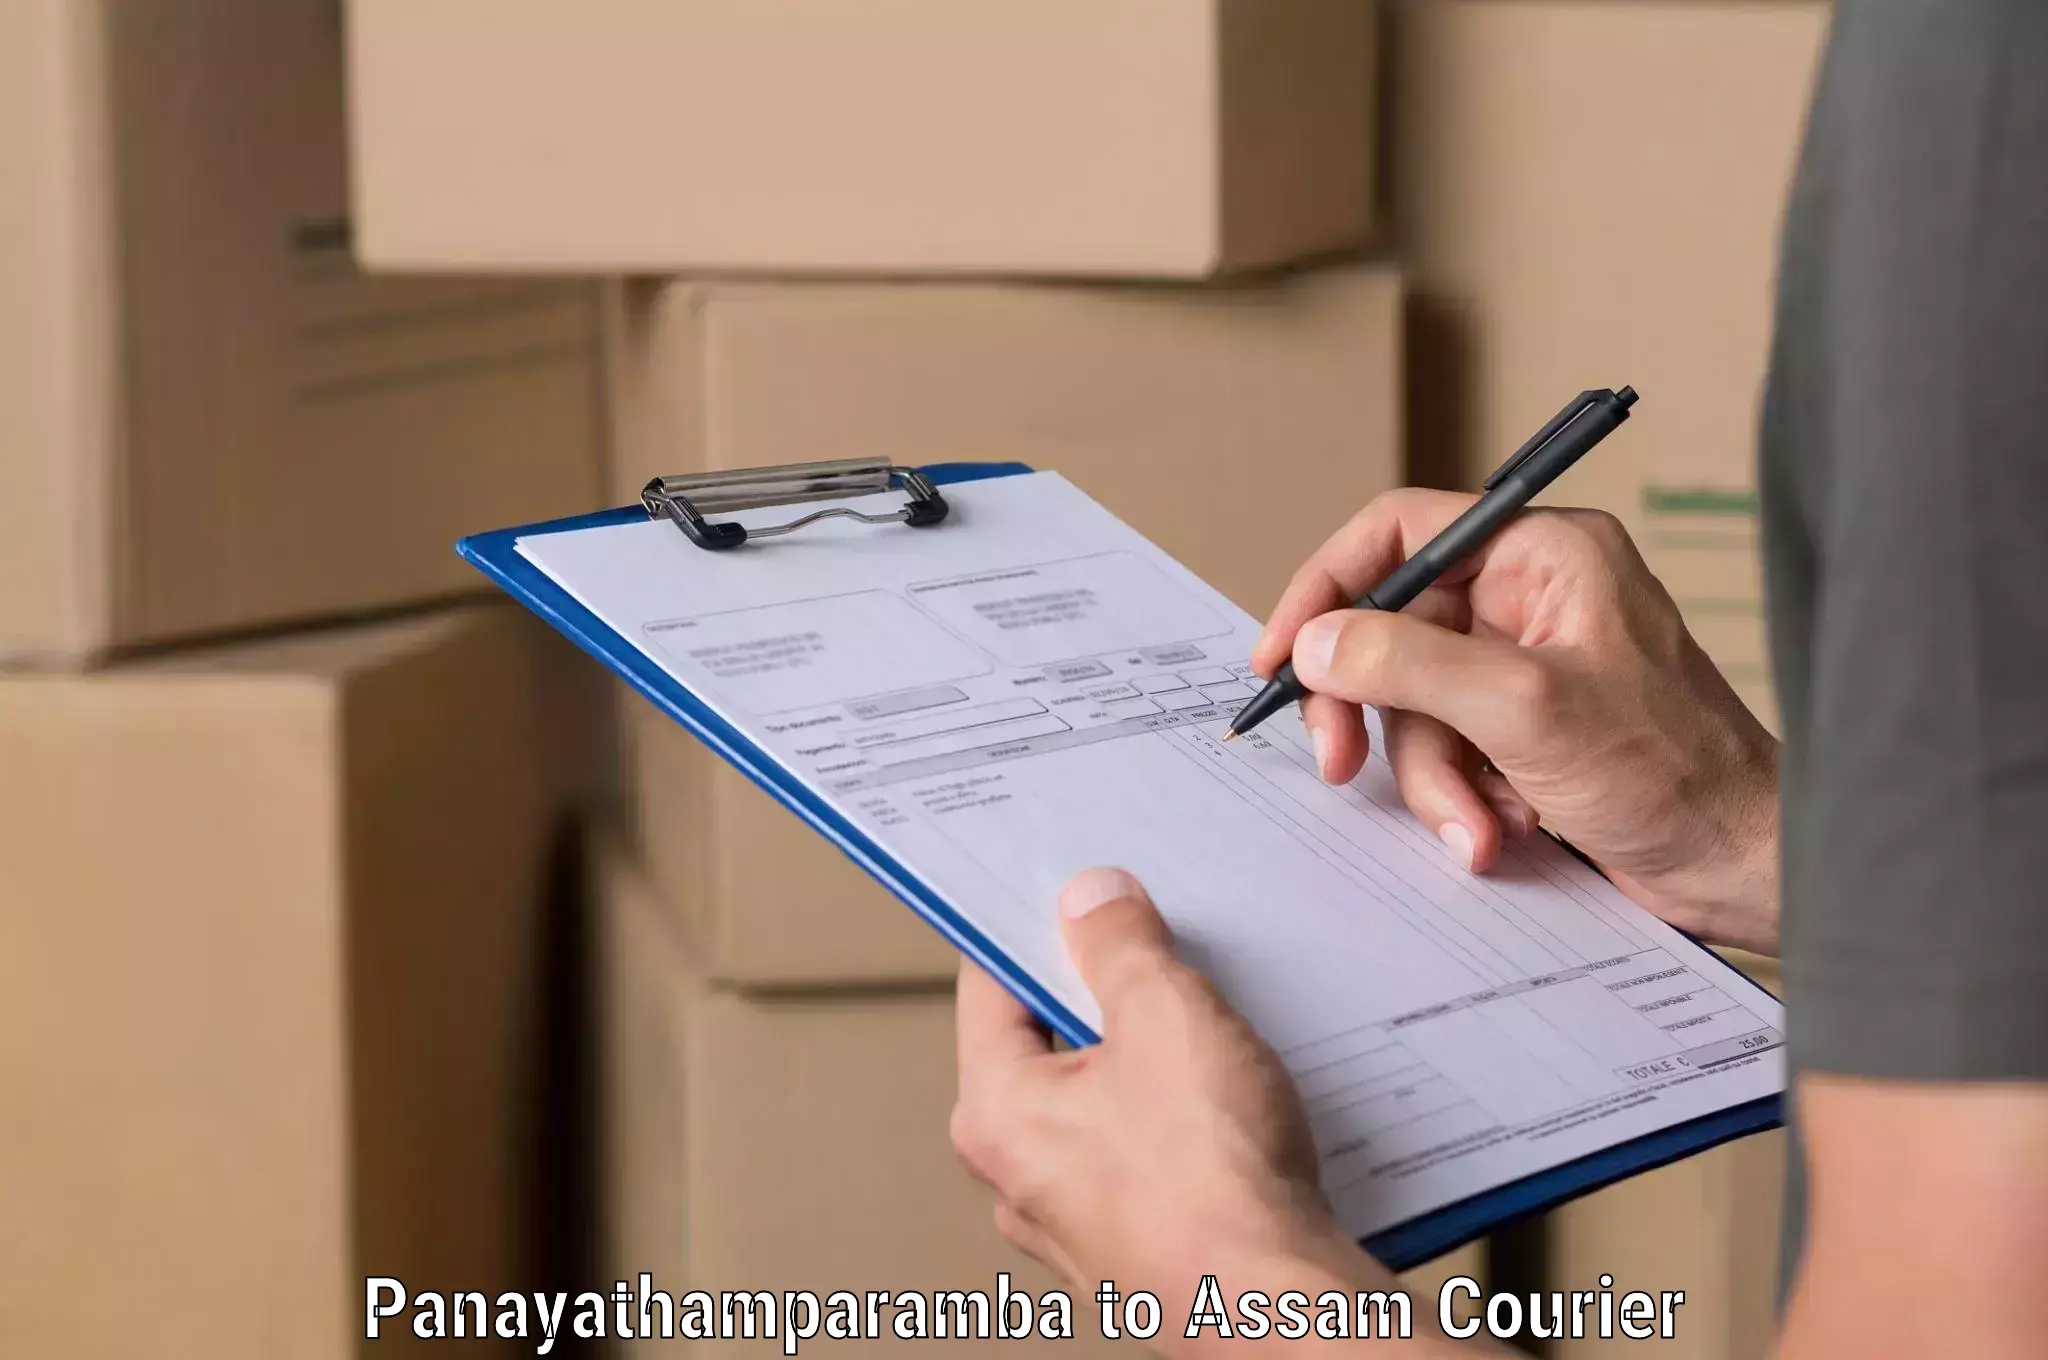 Smart logistics solutions Panayathamparamba to Mayang